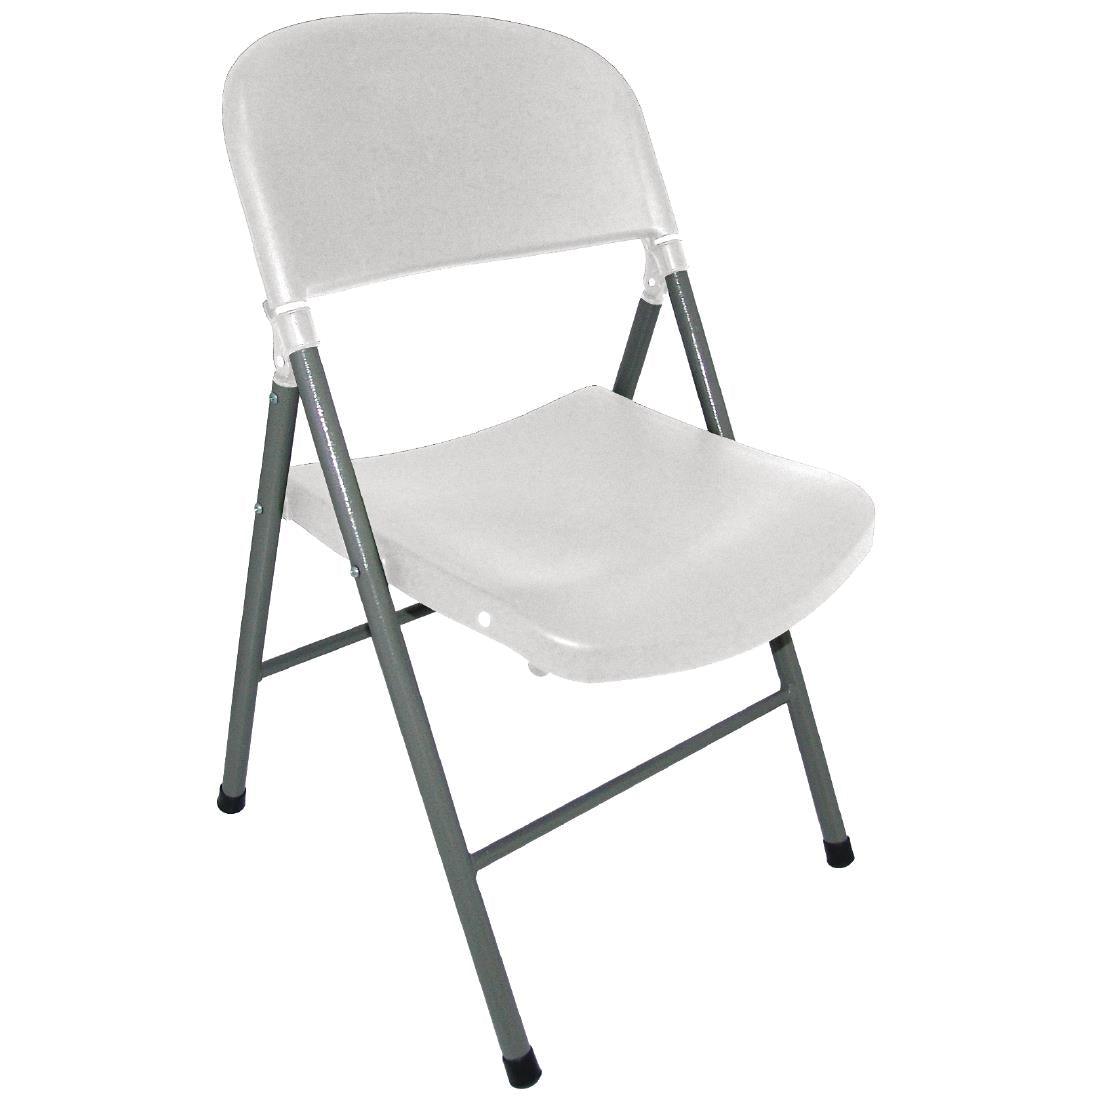 Bolero Foldaway Utility Chairs White (Pack of 2) - HospoStore